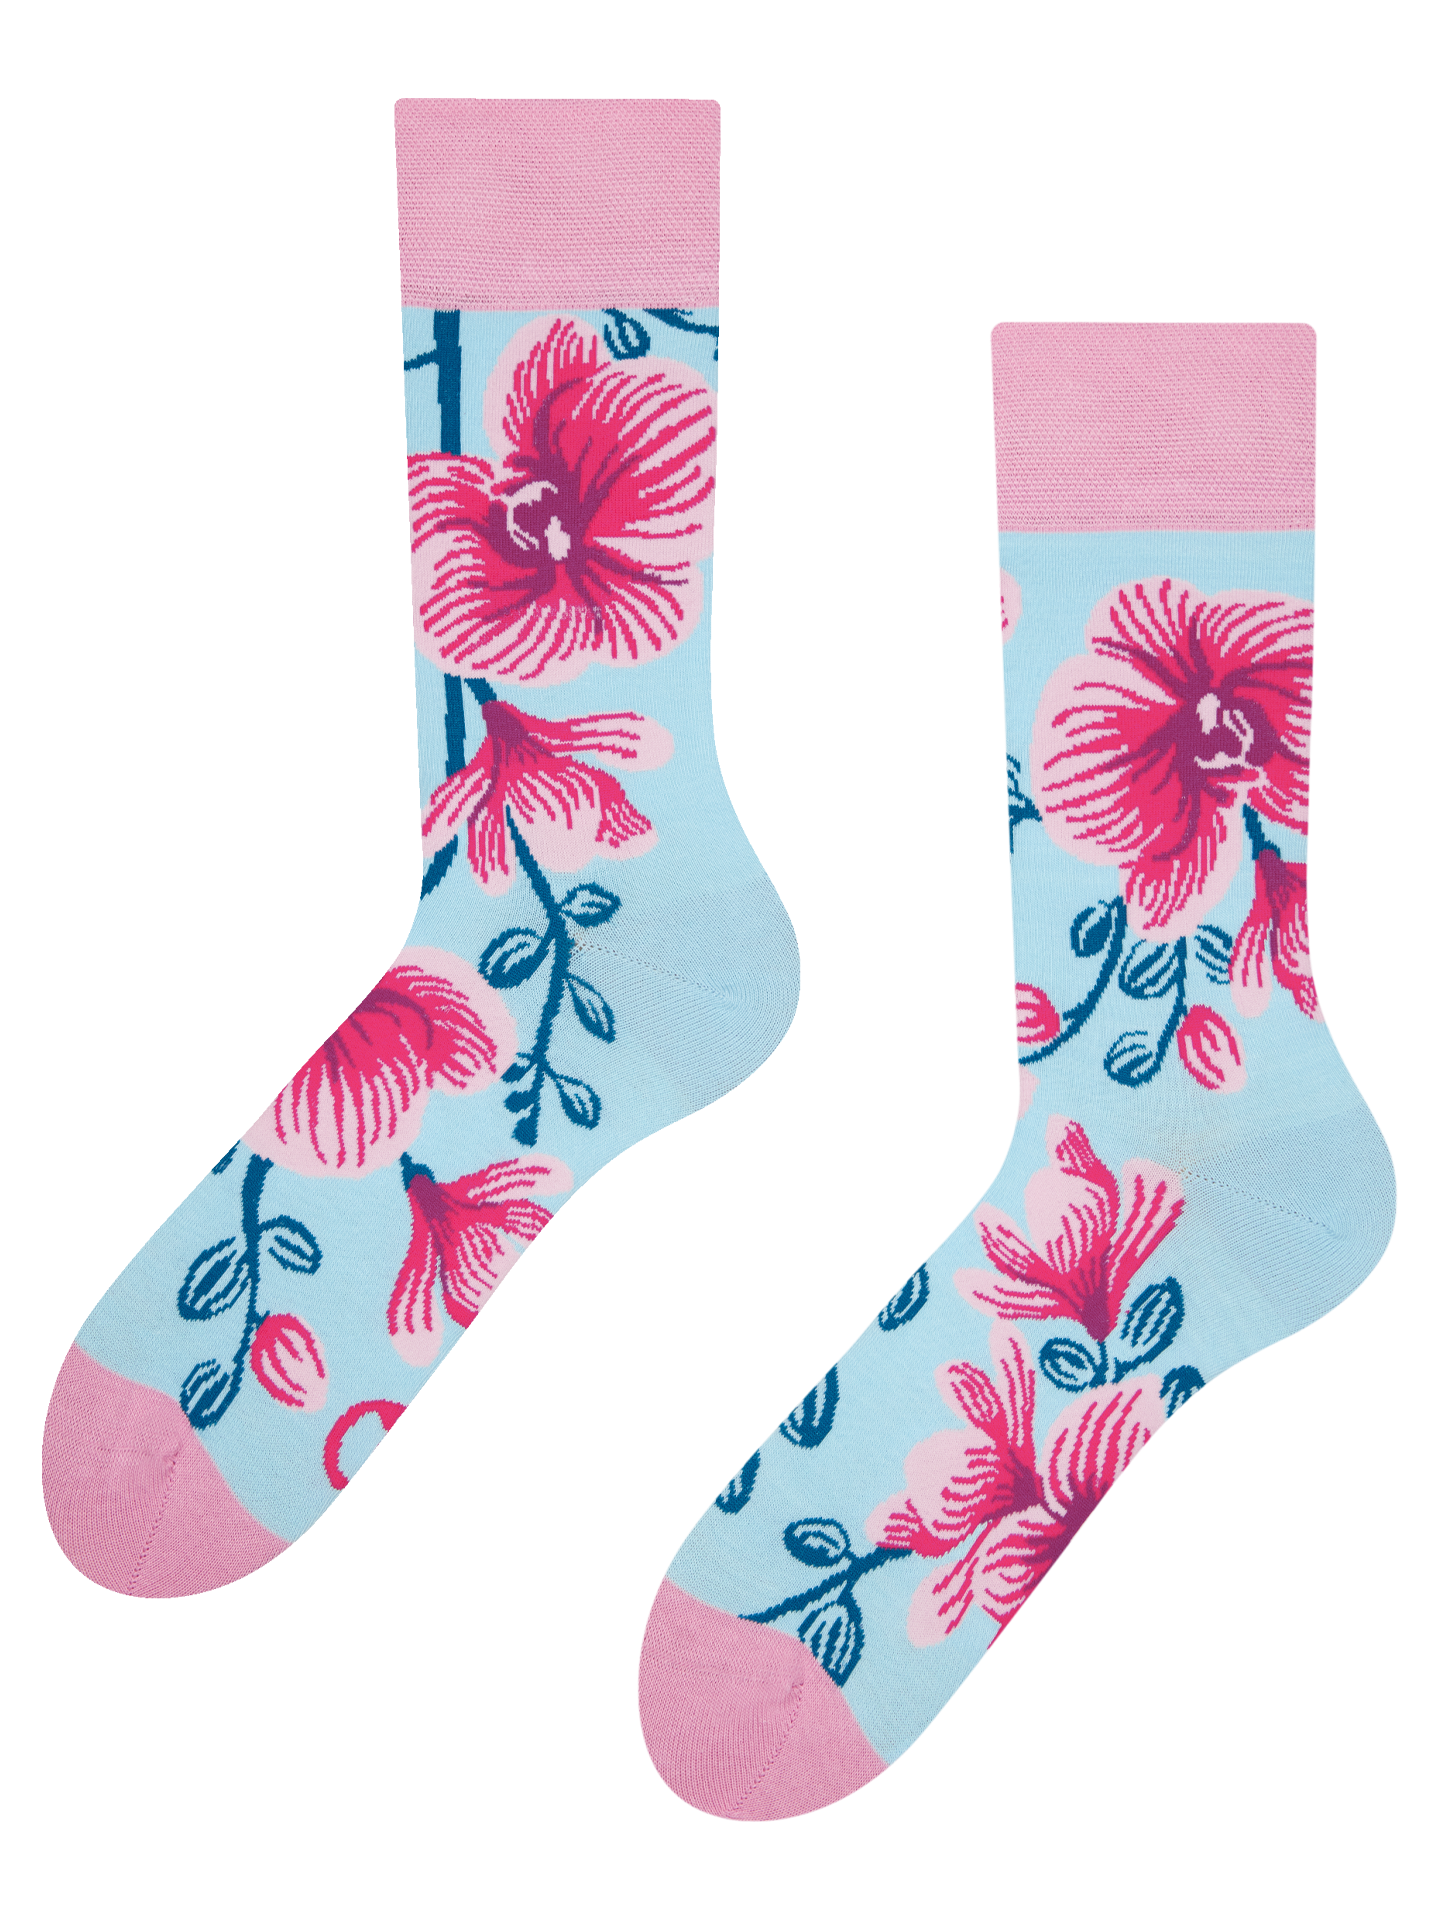 Regular Socks Orchid